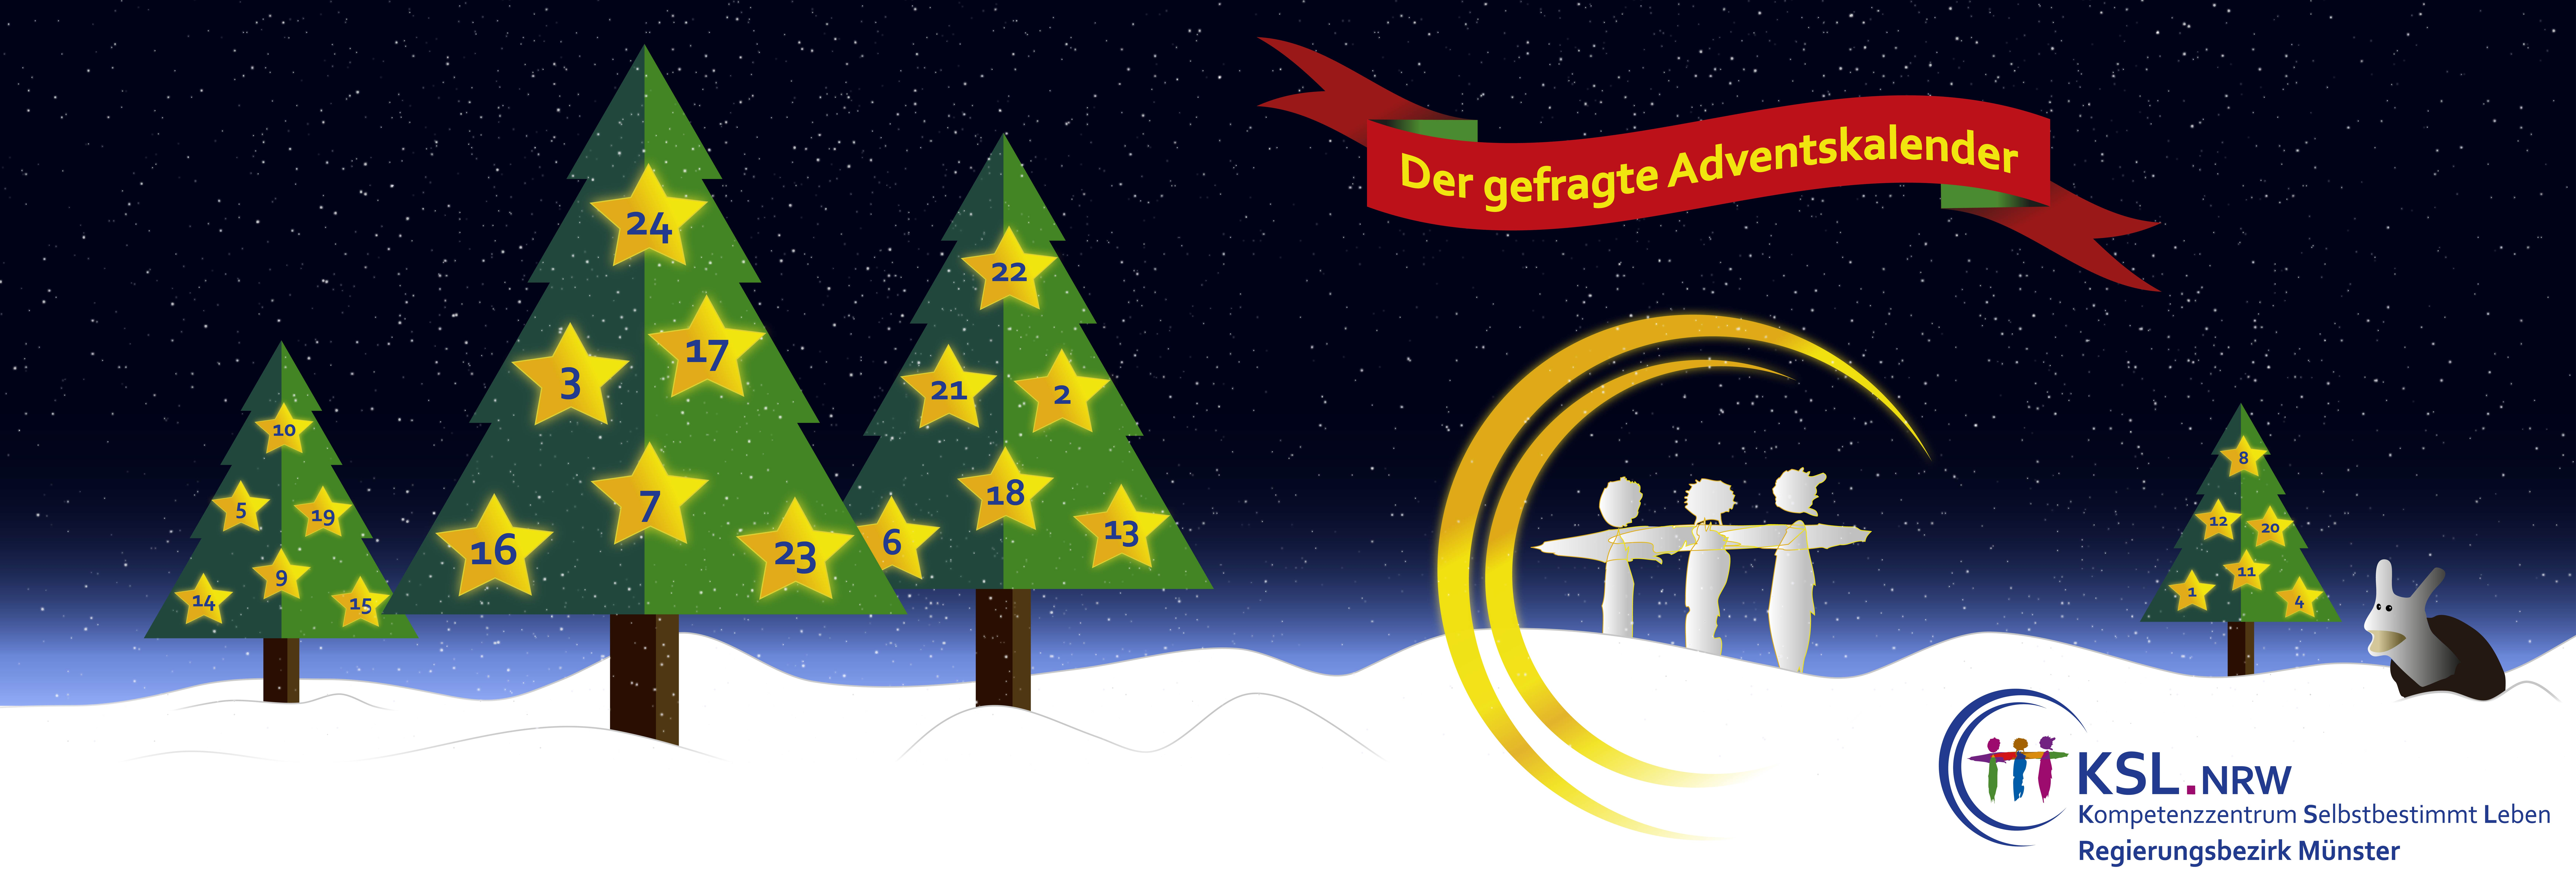 Der gefragte Adventskalender - KSL Münster - weihnachtlicher Hintergrund mit drei Tannenbäumen mit 24 Sternen